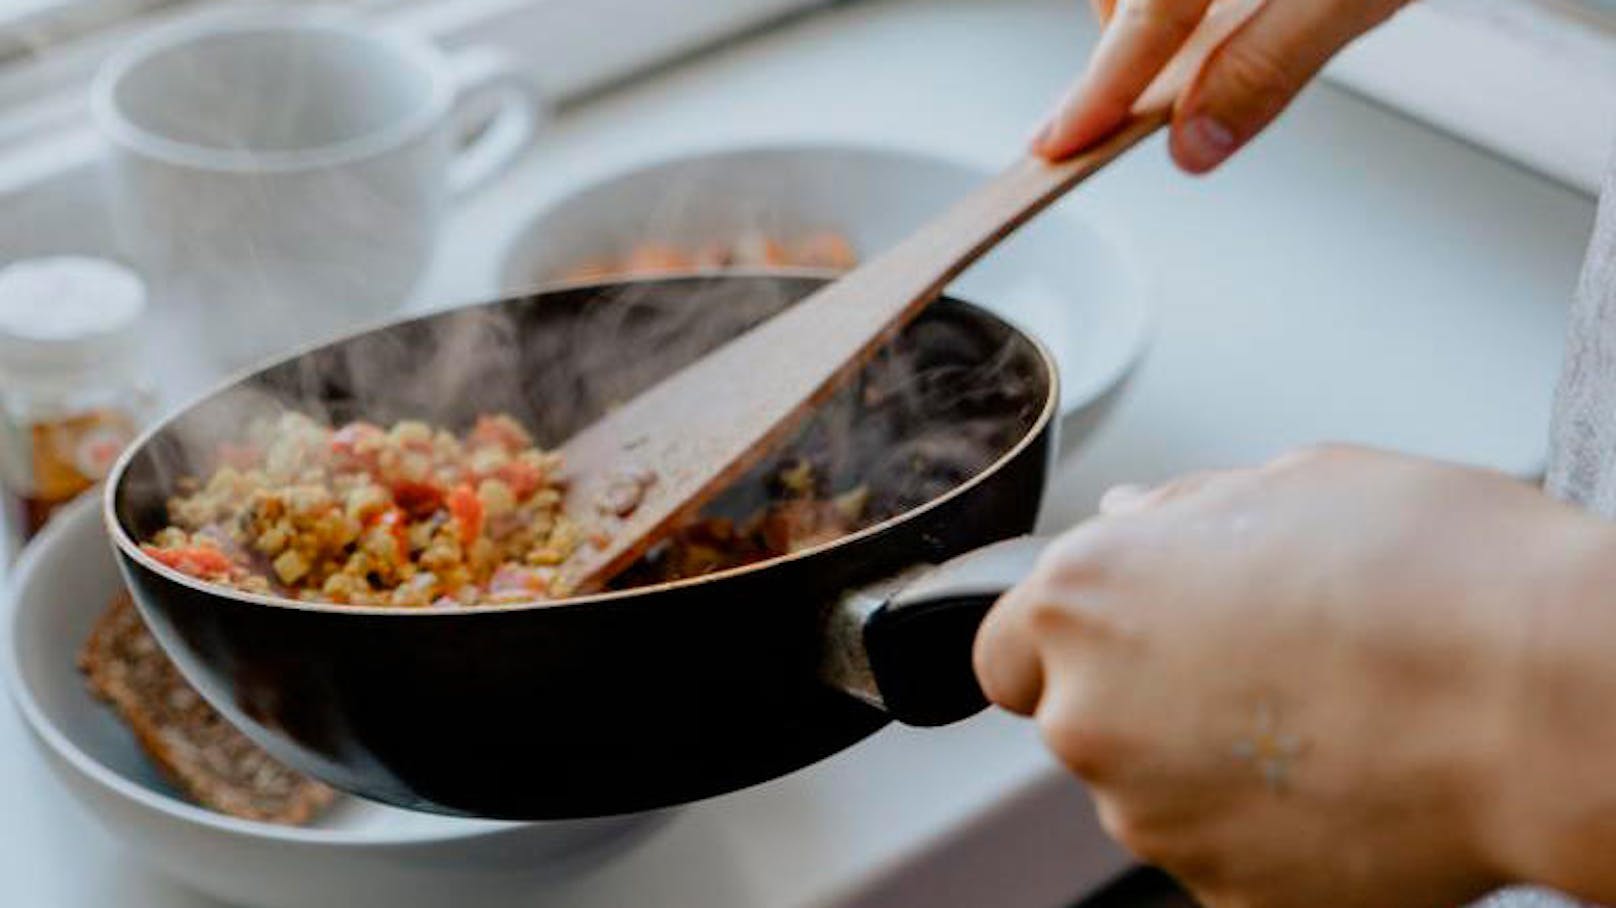 <b>Experimentiere beim Kochen:</b>
Hast du vom Kühl- und Küchenschrankaufräumen noch genug Lebensmittel für eine Mahlzeit übrig, könntest du experimentieren. Probiere neue Kombinationen aus oder ein Gericht mit der Packung Quinoa, die deine vegane Cousine dir geschenkt hat.